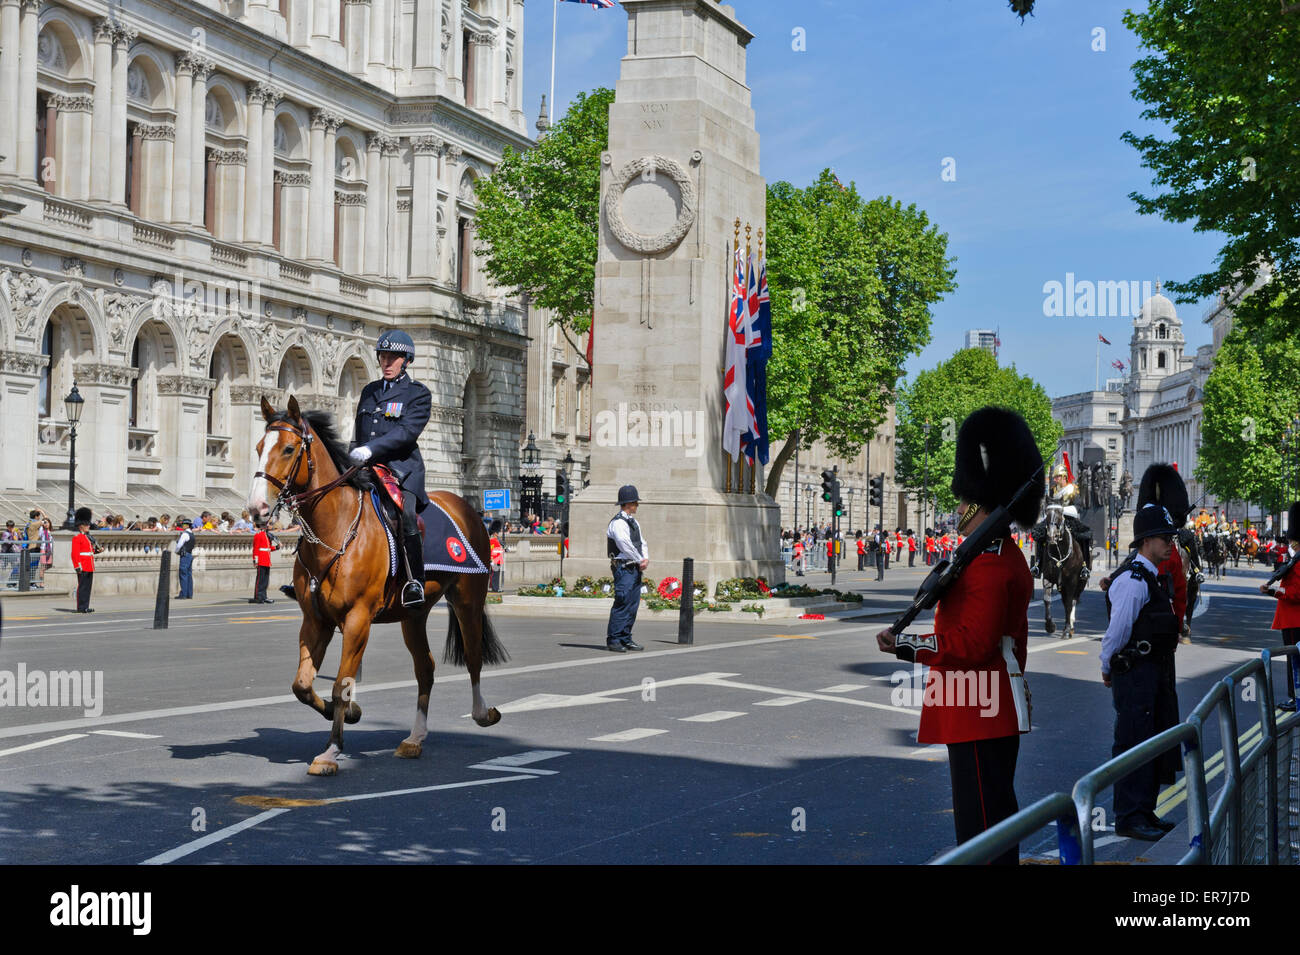 Ein Polizeioffizier auf dem Pferderücken, Whitehall, London, England das Kriegerdenkmal Cenotaph weitergeben. Stockfoto